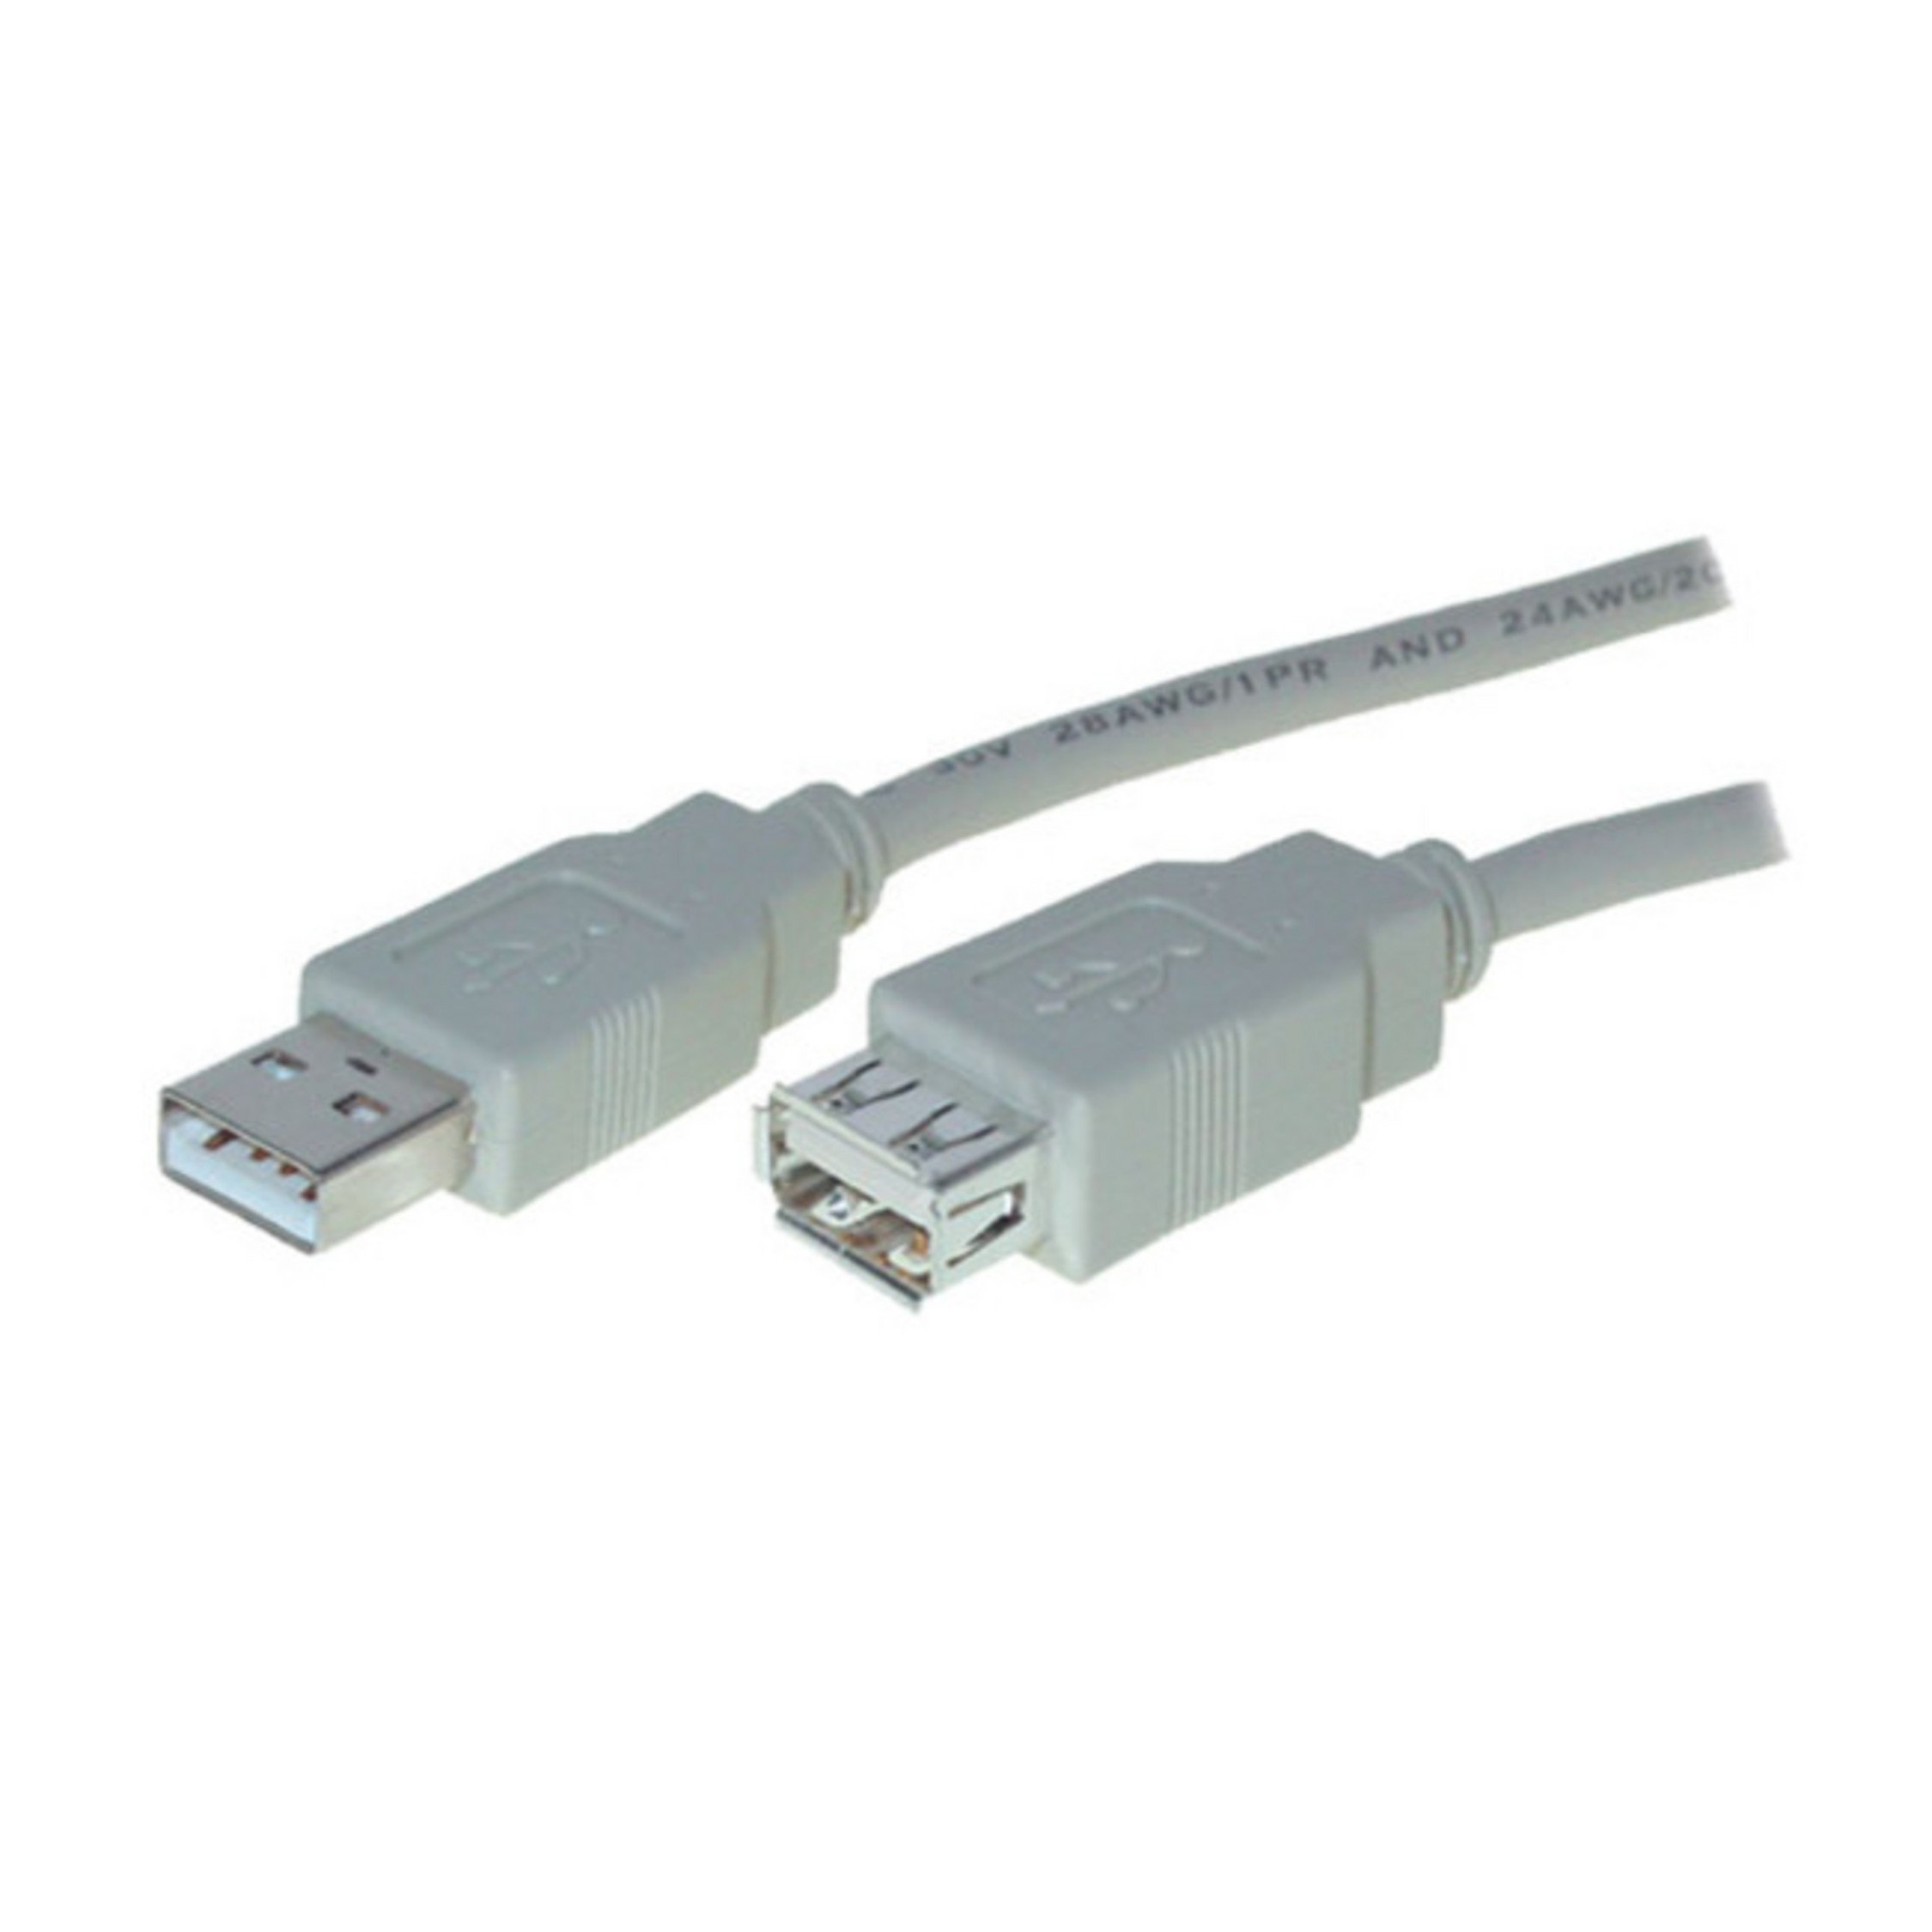 High MAXIMUM USB 2.0, A CONNECTIVITY Buchse S/CONN A / USB Verlängerung Kabel USB 3m Speed Stecker